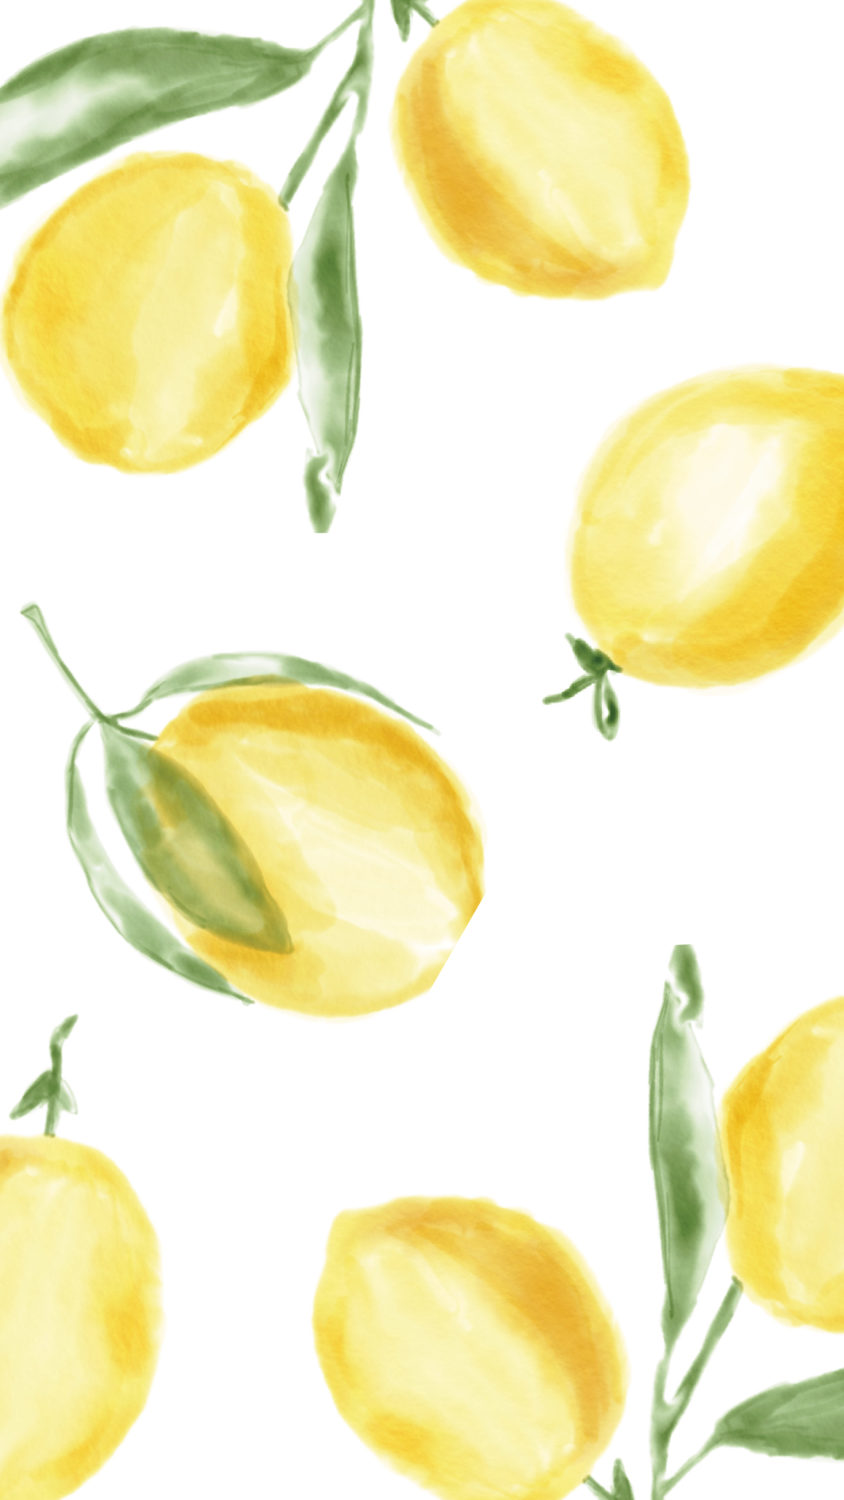 بارگیری طرح نقاشی آبرنگی از لیمو های طلایی با برگ سبز